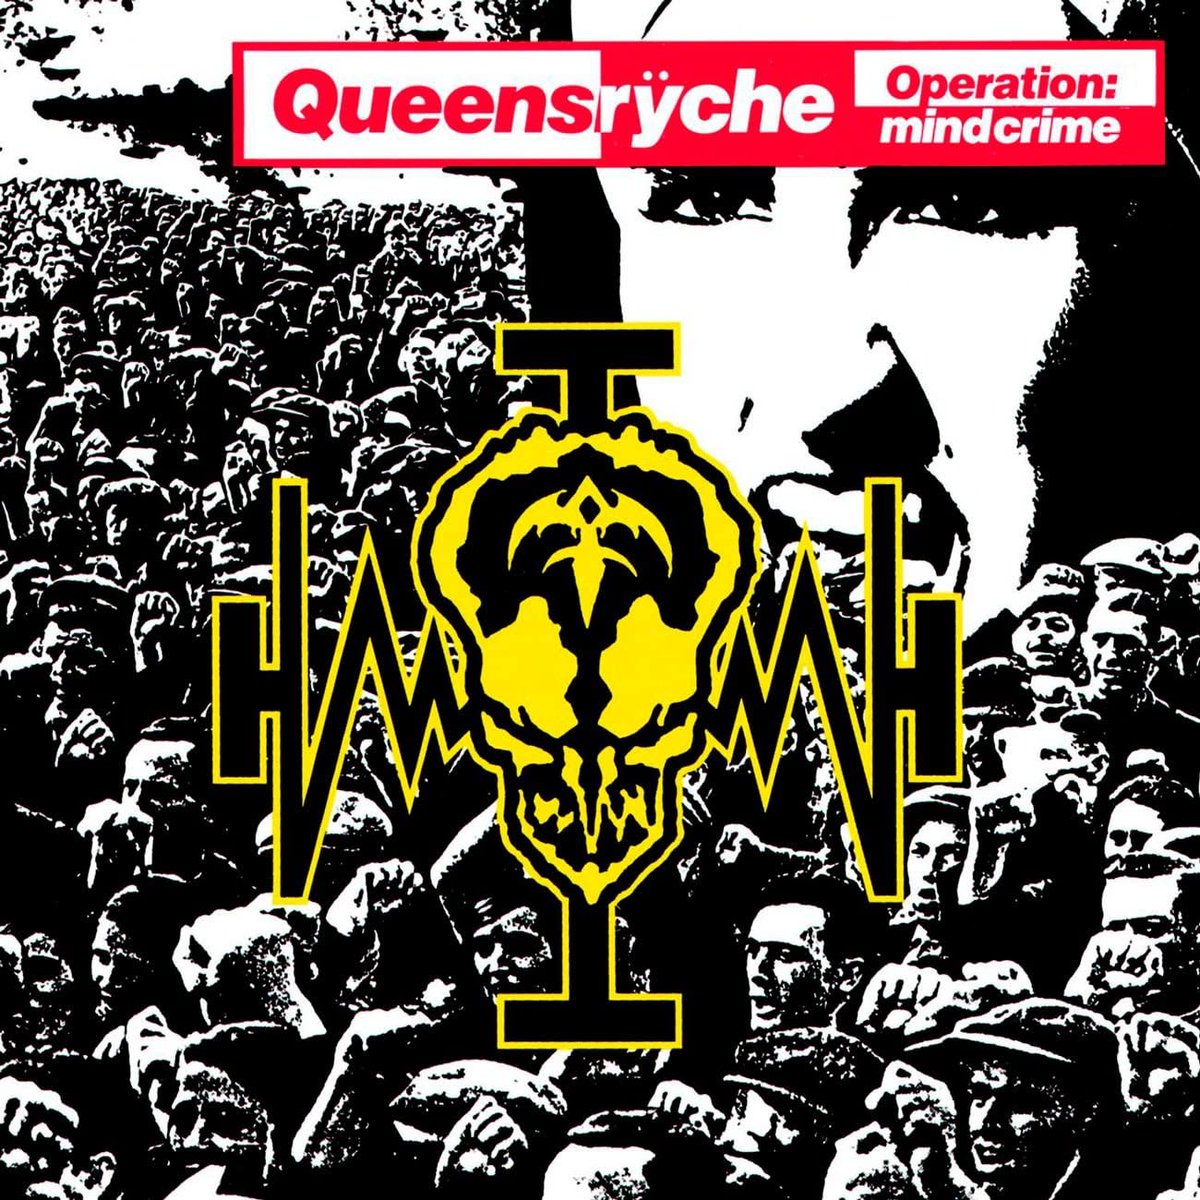 #MetalAnniversary Il #3Maggio del 1988, i #Queensrÿche pubblicavano quello che è considerato il loro più grande capolavoro: 'Operation: Mindcrime'! Che, per inciso, sarebbe uno degli album preferiti di Bruce Dickinson. E questo vi dovrebbe bastare... #Metal #HeavyMetal